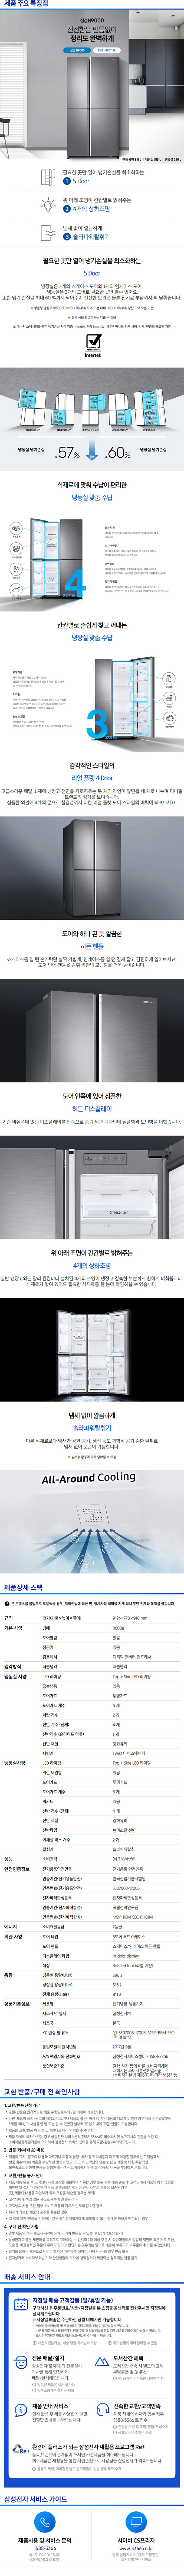 광진케이블 - 삼성 지펠 양문냉장고 (RH81M8011S9) 상세보기